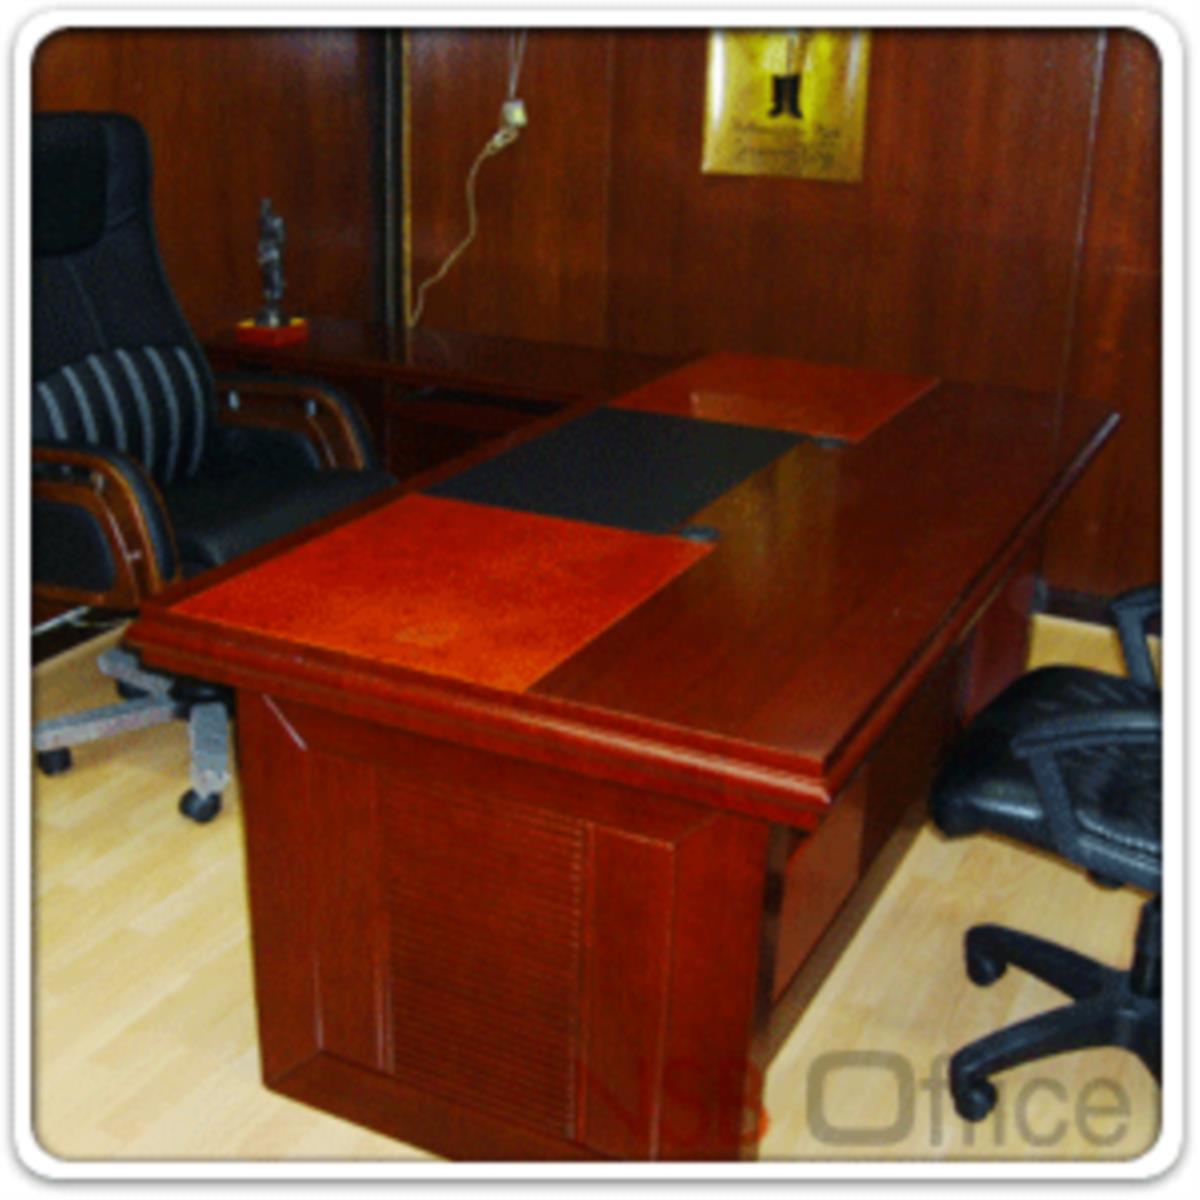 โต๊ะผู้บริหารตัวแอล  รุ่น Regent (เรเจนท์) ขนาด 180W cm. พร้อมตู้ลิ้นชักและตู้ข้างโต๊ะ